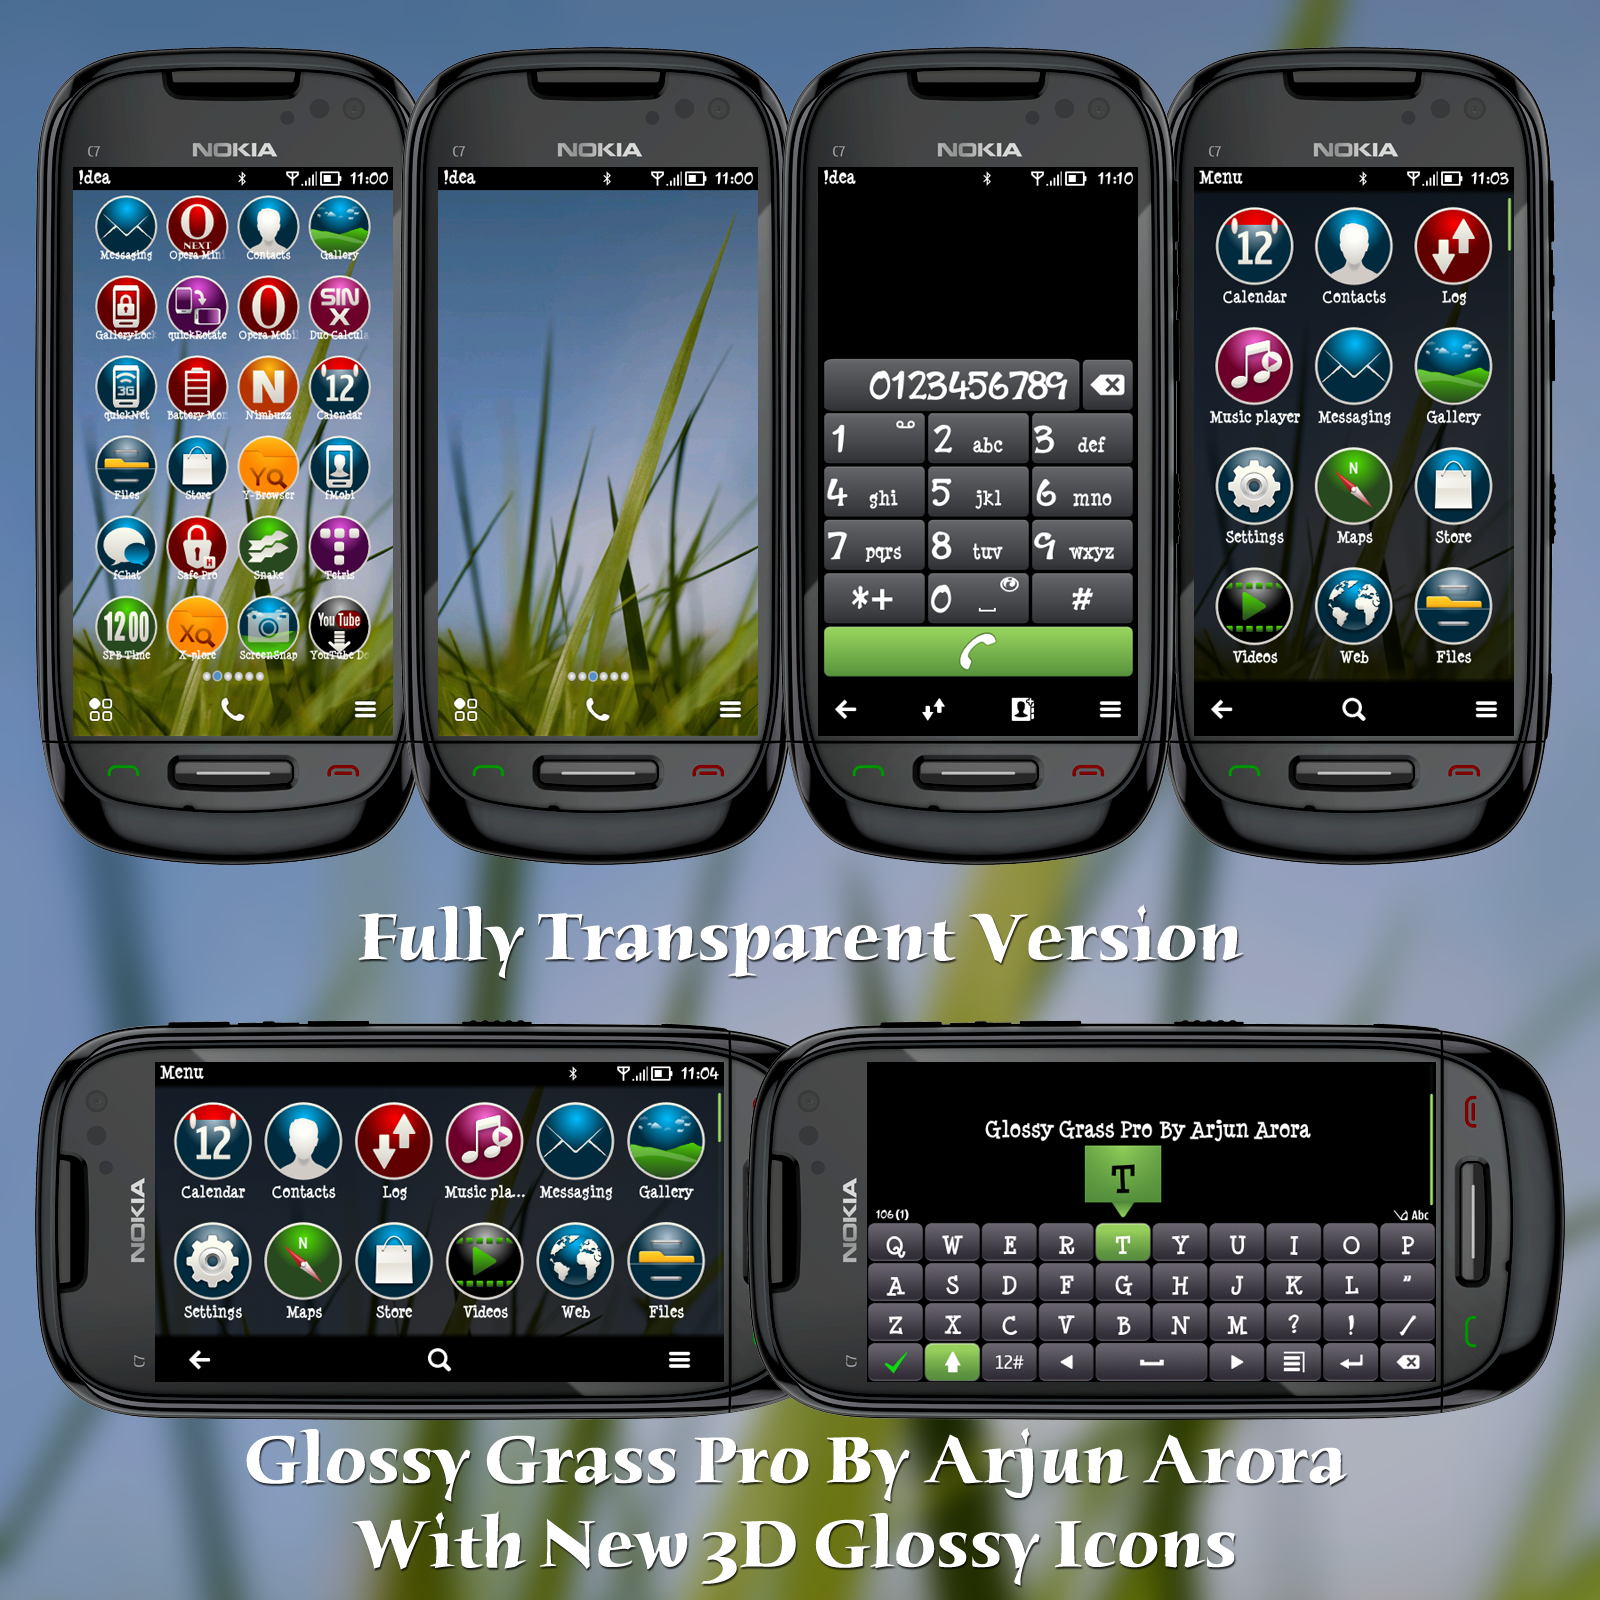 http://4.bp.blogspot.com/-LRexerfIkCI/T3msz7aiGDI/AAAAAAAAATA/M4joD6rOyMc/s1600/Glossy-Grass-Nokia-1.png